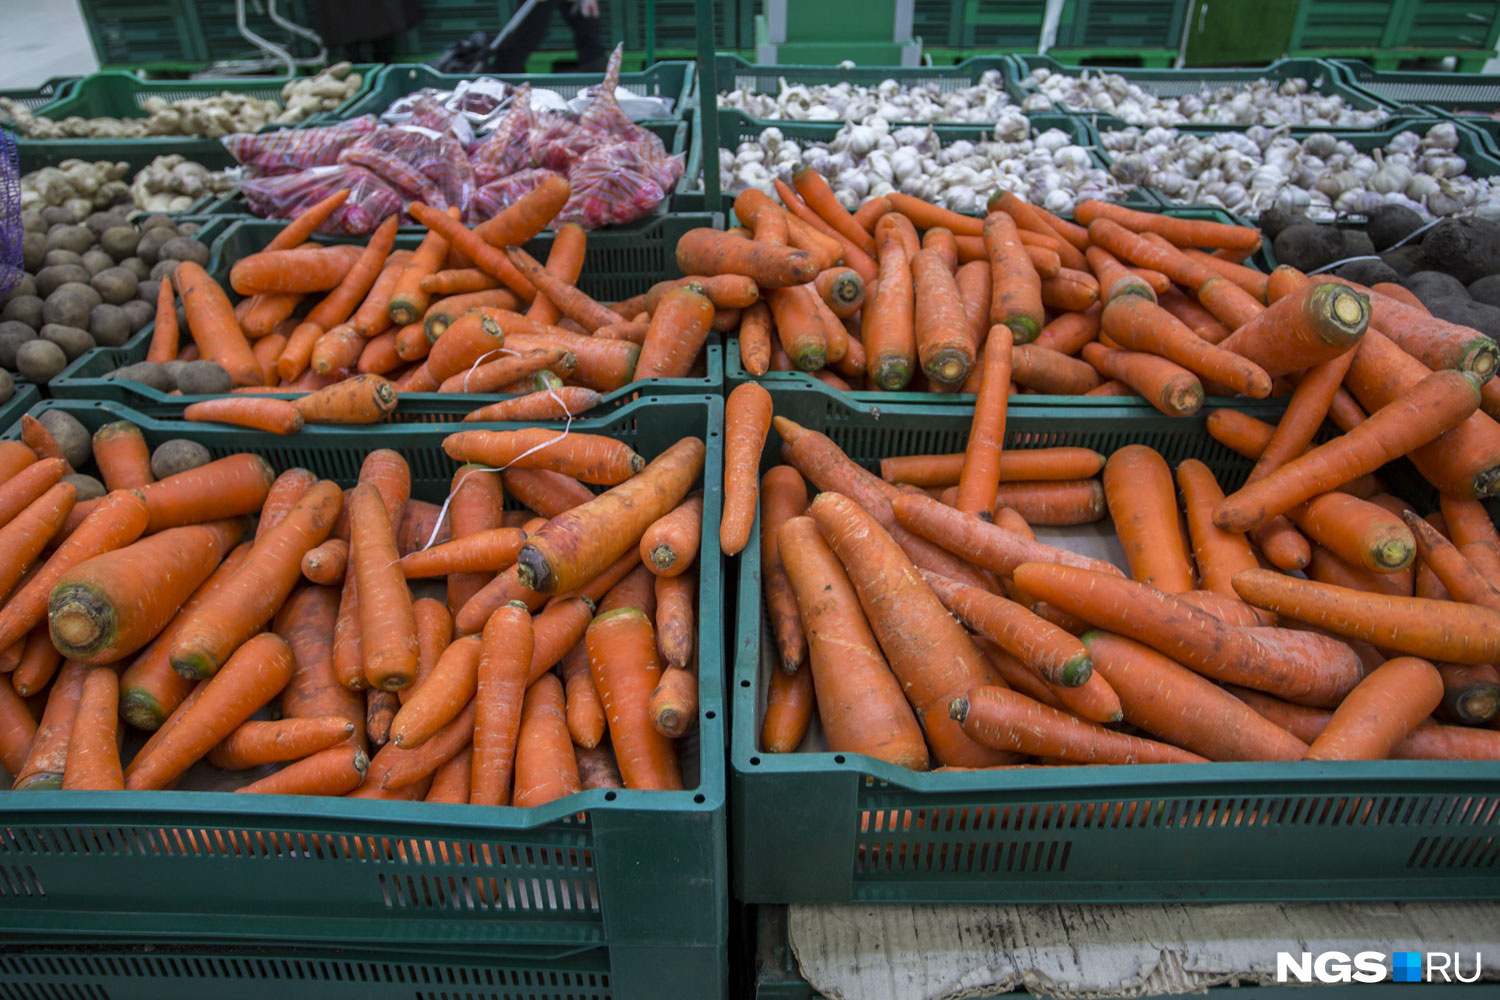 Как сажать морковь, лучшие сорта моркови, как сажать свеклу, лучшие сортасвеклы, май-июнь 2022 года - 7 мая 2022 - НГС